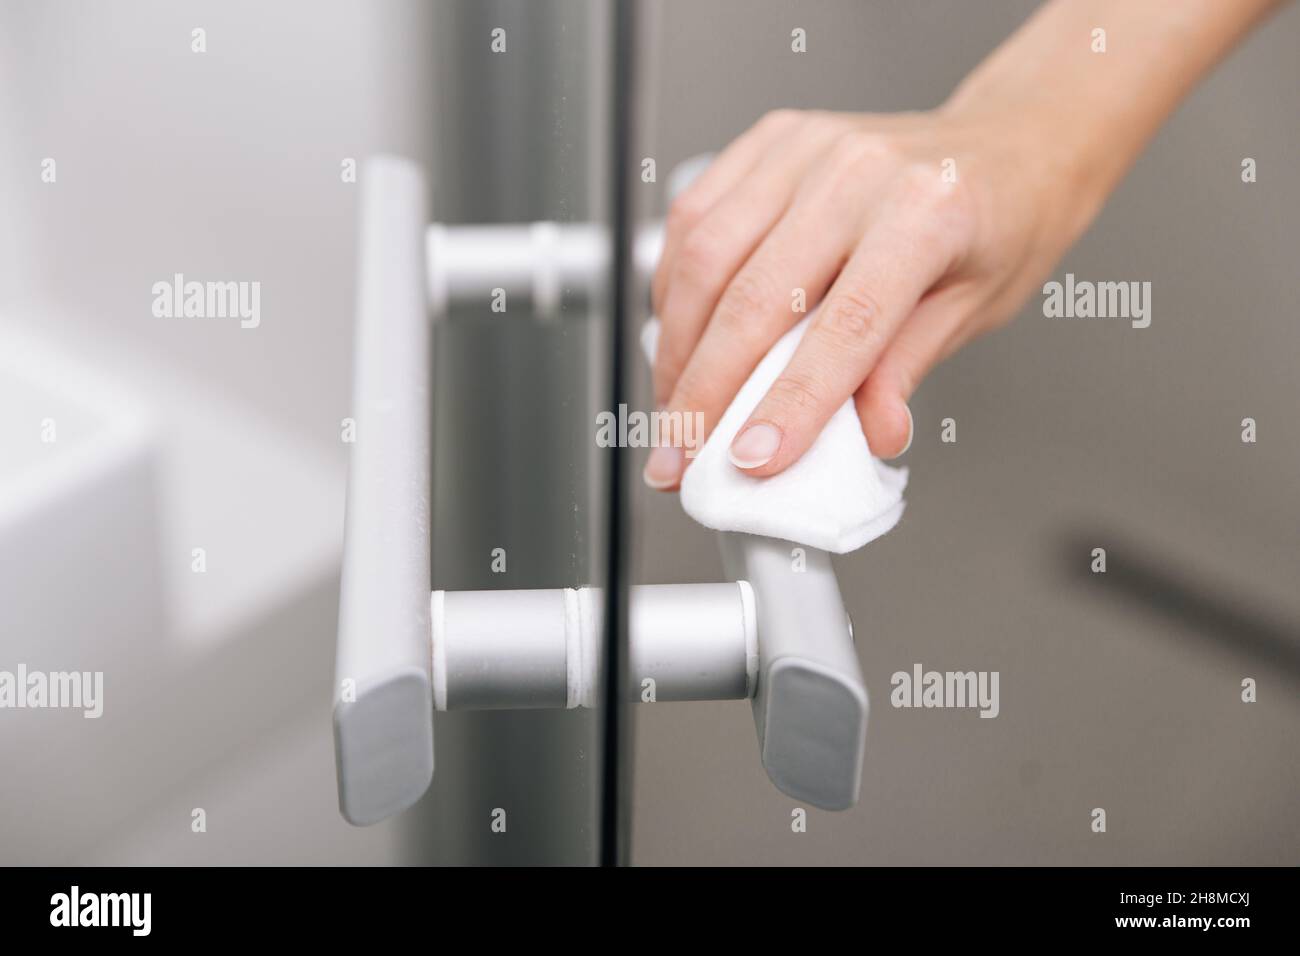 Reinigen Sie die Griffe der Glastür mit einem antiseptischen, feuchten Tuch. Desinfizieren Sie Oberflächen Prävention in Krankenhäusern und öffentlichen Räumen gegen Corona-Virus. Frauenhand Stockfoto